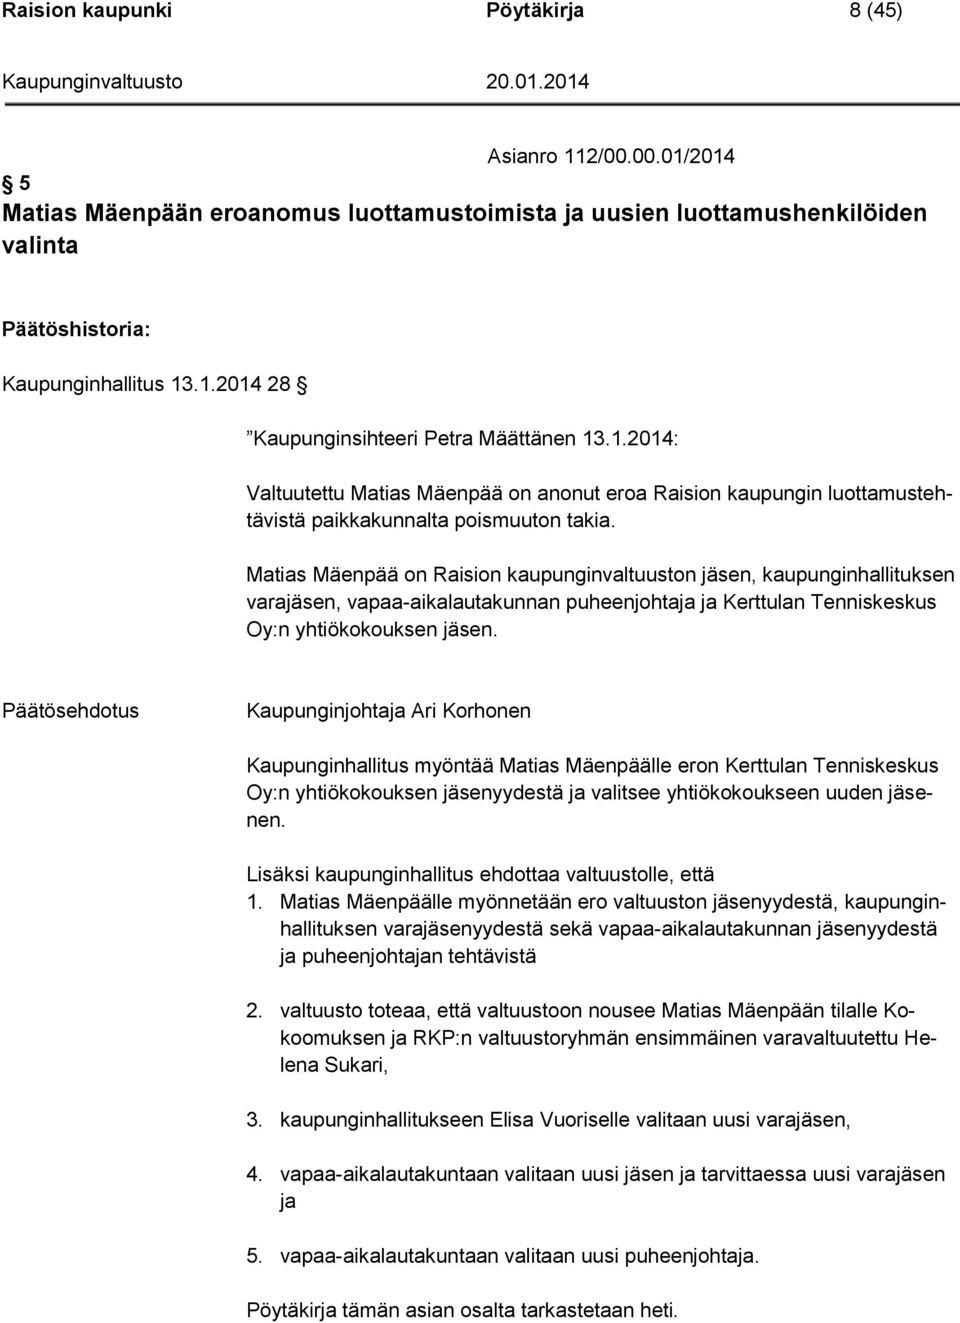 Matias Mäenpää on Raision kaupunginvaltuuston jäsen, kaupunginhallituksen varajäsen, vapaa-aikalautakunnan puheenjohtaja ja Kerttulan Tenniskeskus Oy:n yhtiökokouksen jäsen.